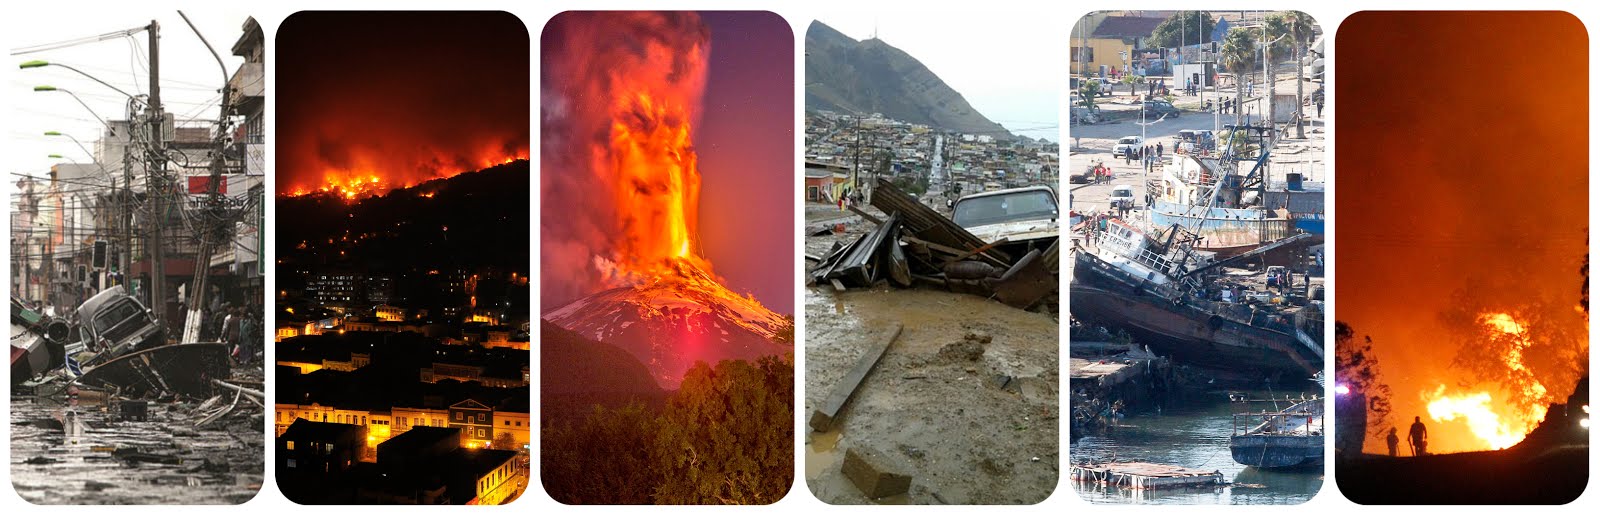 desastres naturales en chile